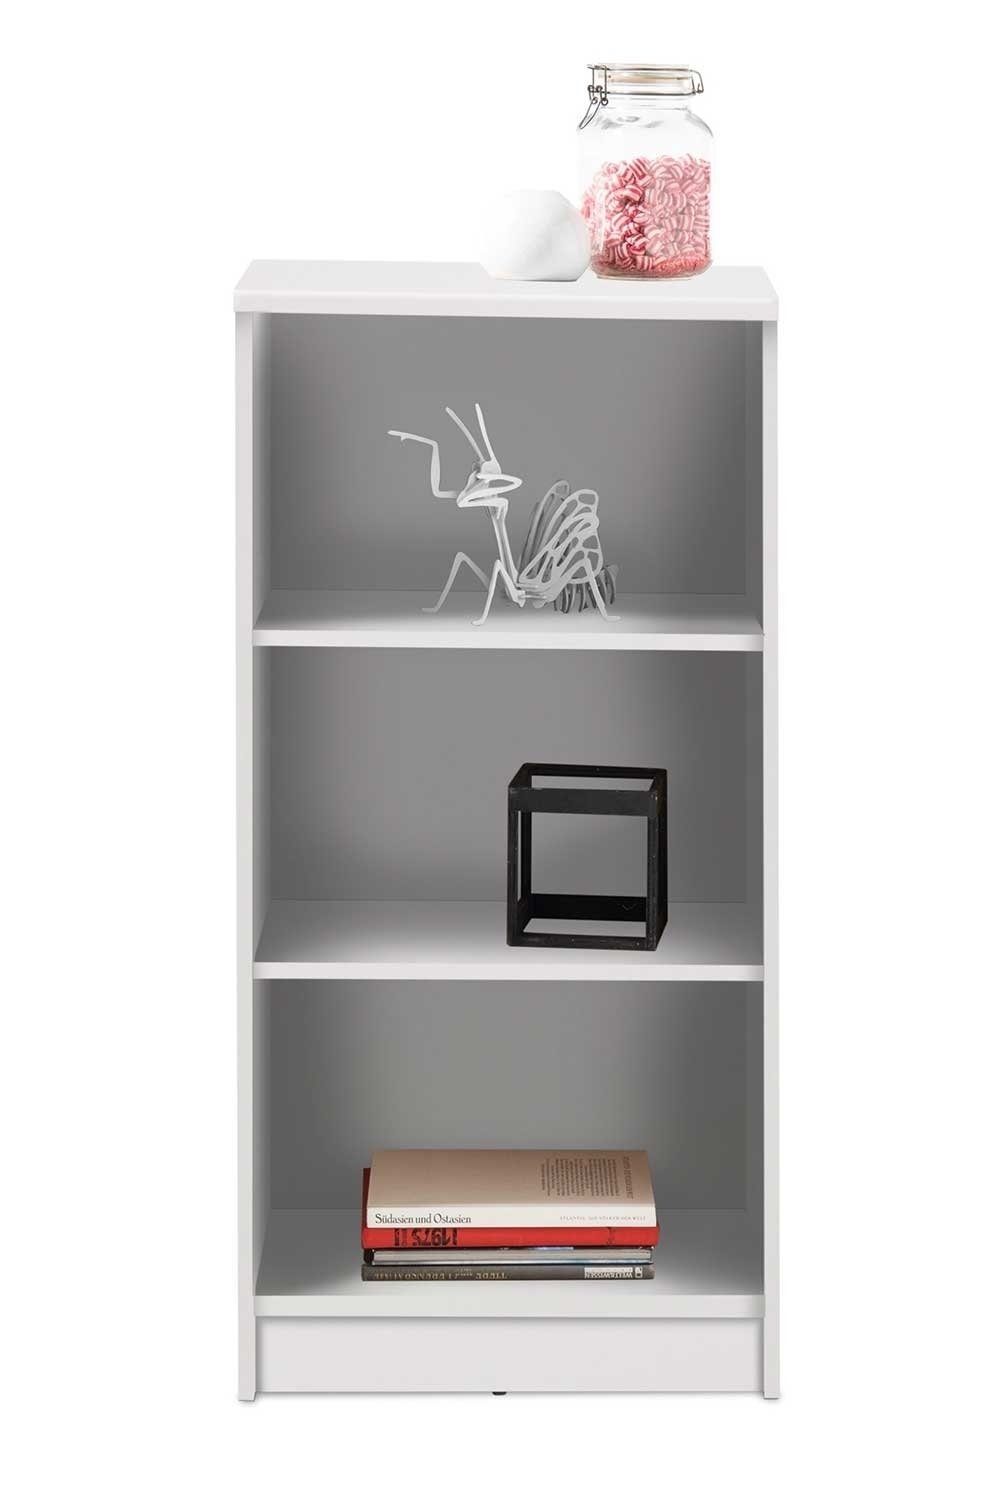 Bücherregal OPTIMUS, Weiß, B 54 cm x H 111 cm, 2 Einlegeböden